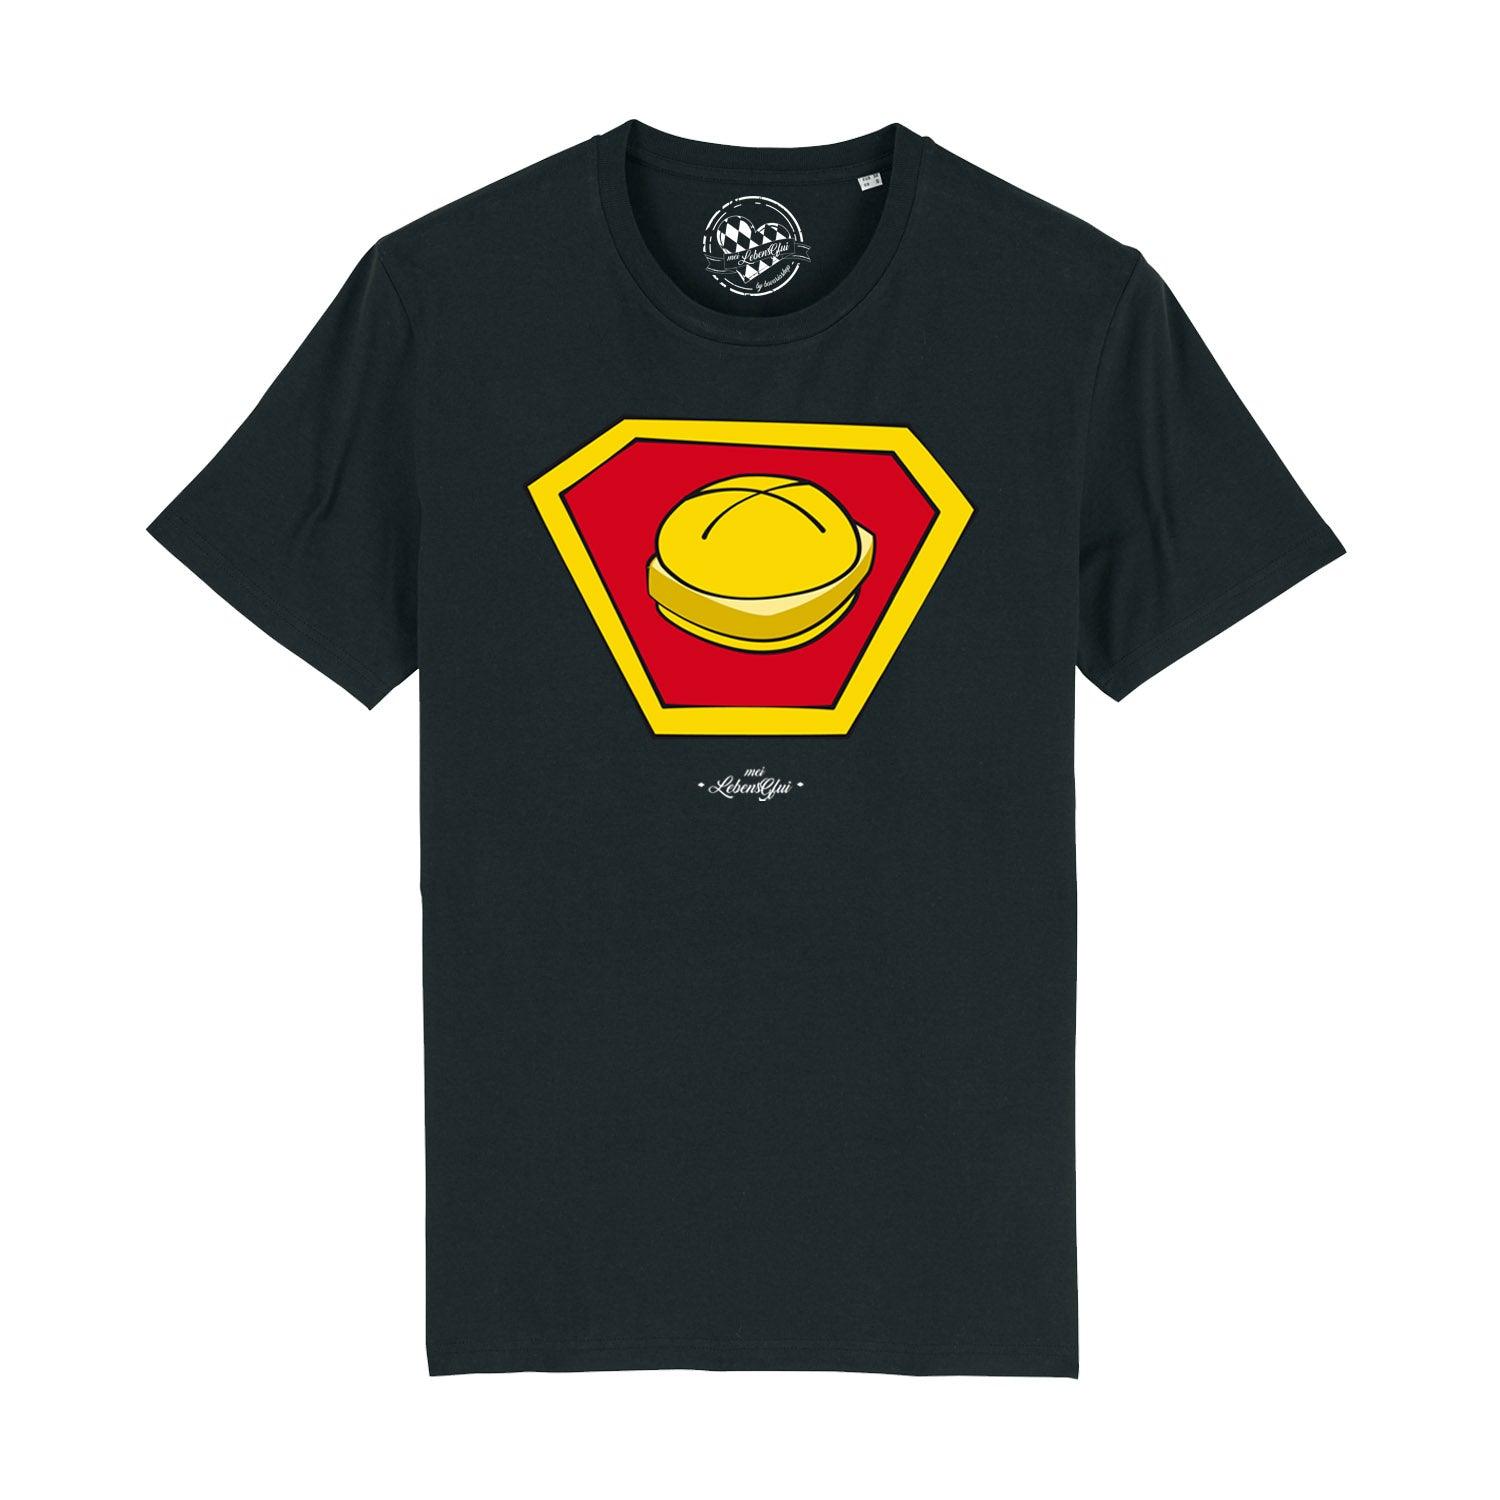 Herren T-Shirt "Super-Lewakaas" - bavariashop - mei LebensGfui